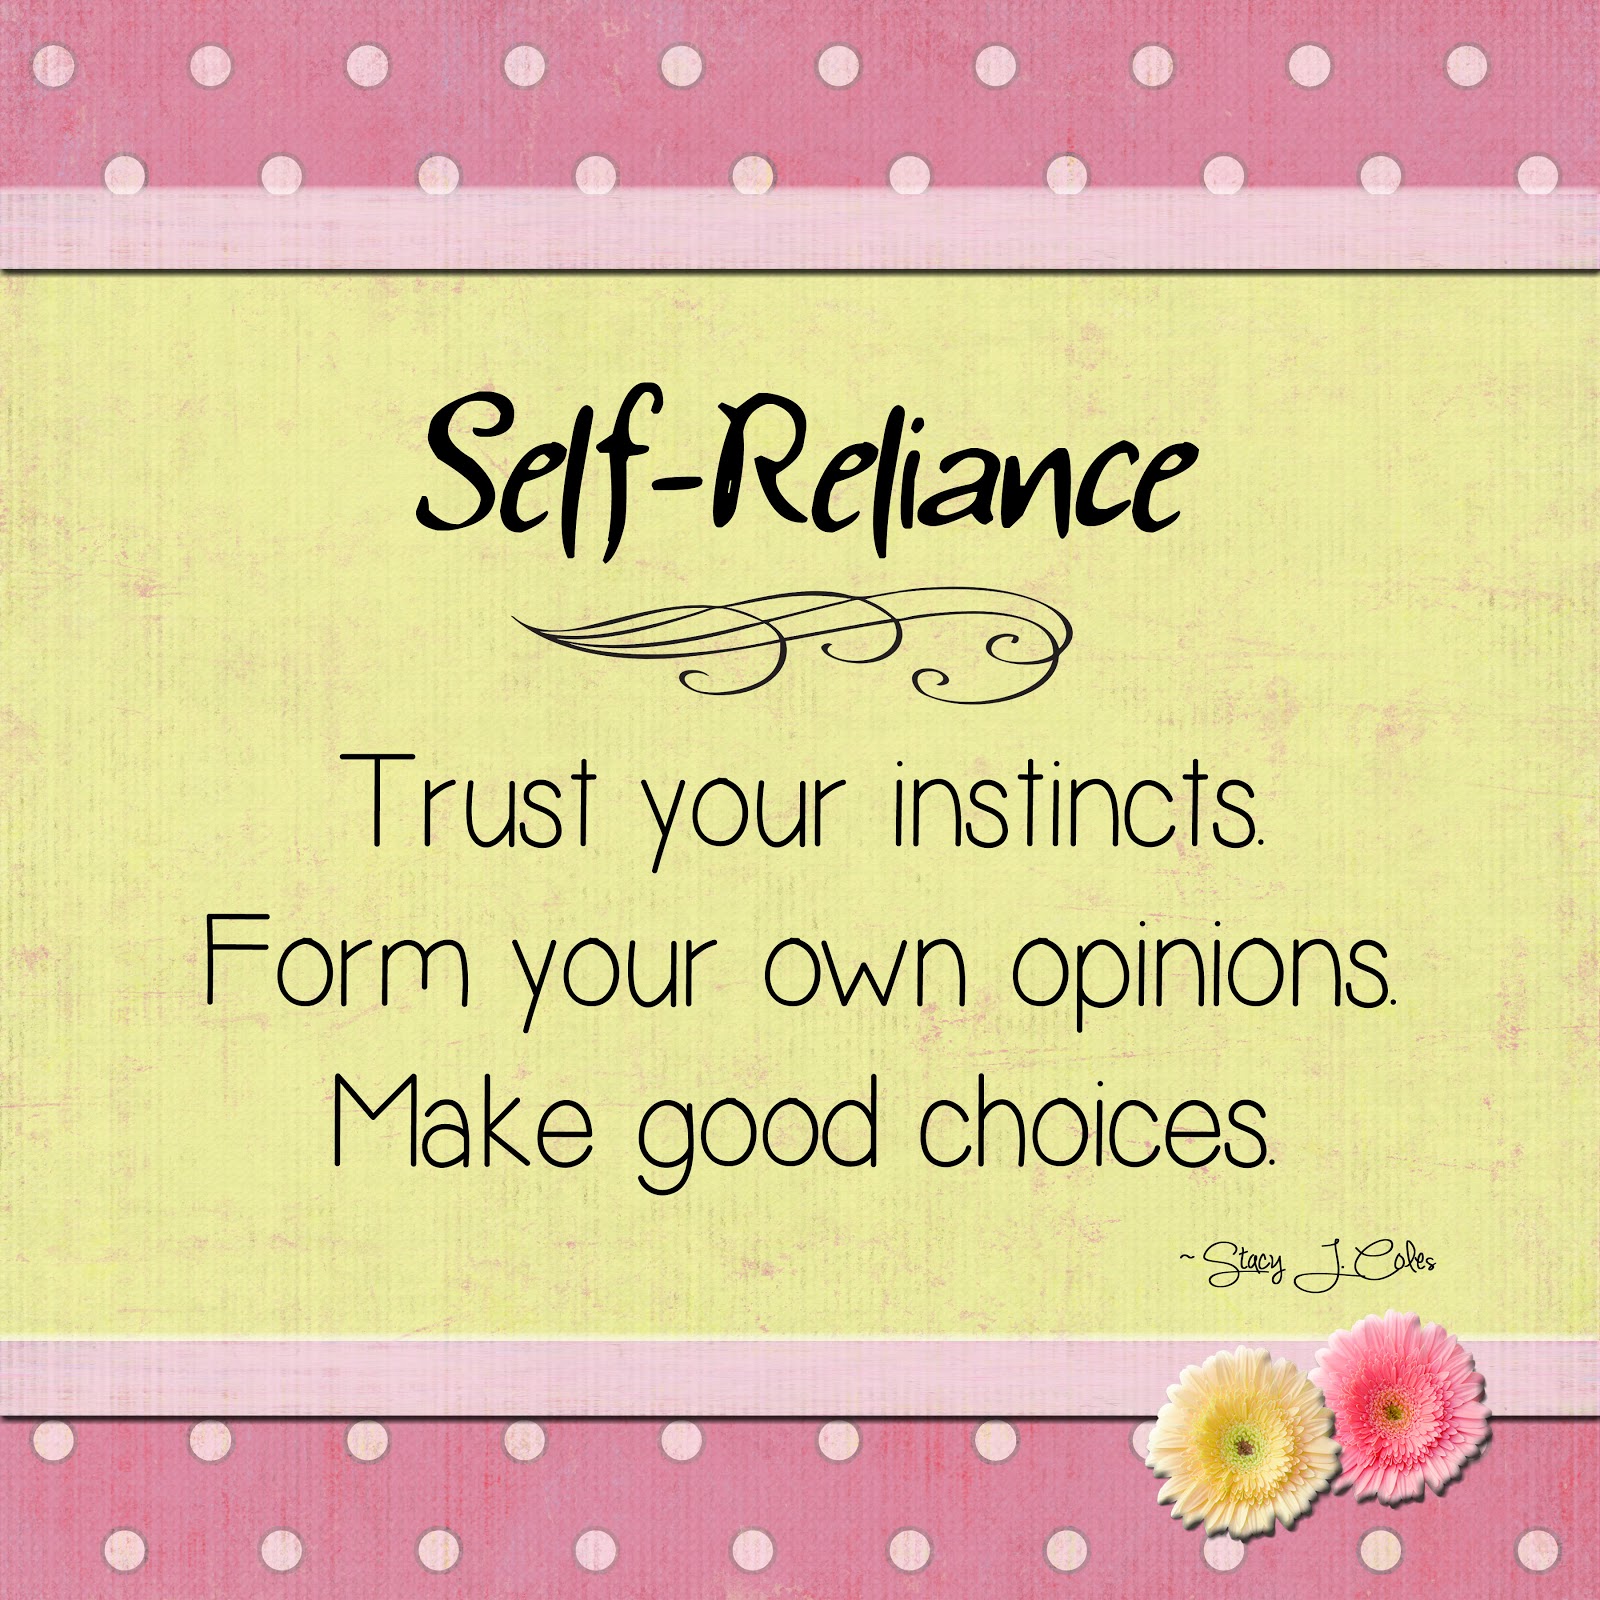 Self-reliance Quotes. QuotesGram